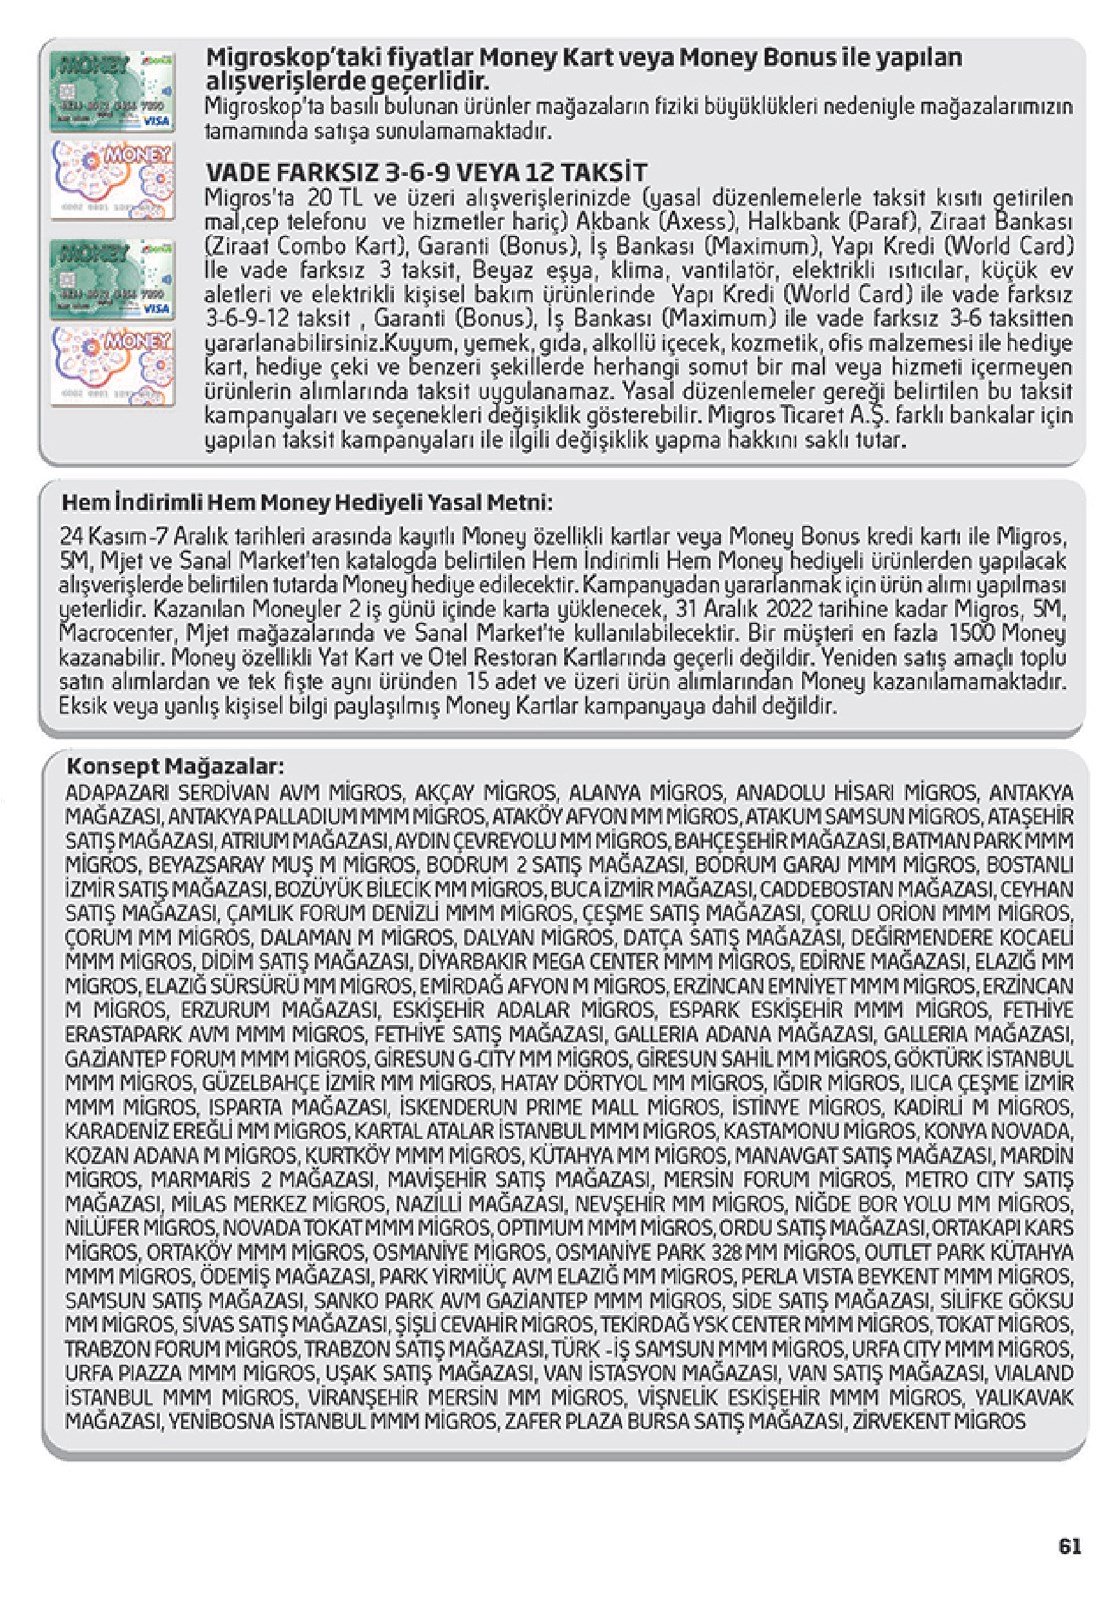 24.11.2022 Migros broşürü 61. sayfa